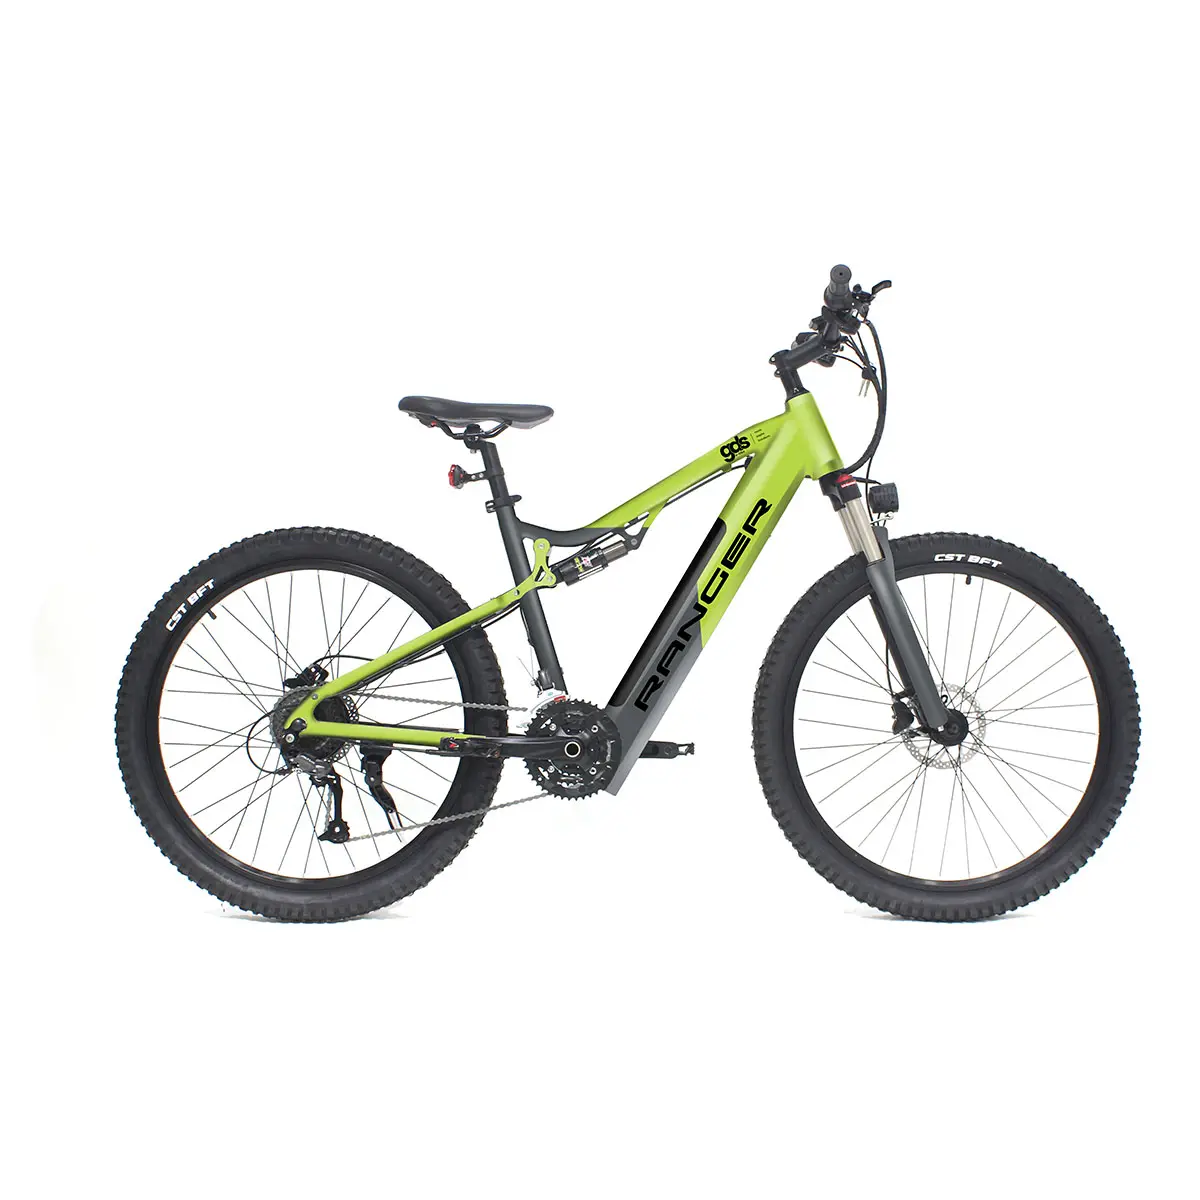 Sepeda motor downhill sport murah dewasa mtb suspensi penuh dirt hybrid e gunung e-bike sepeda listrik lainnya